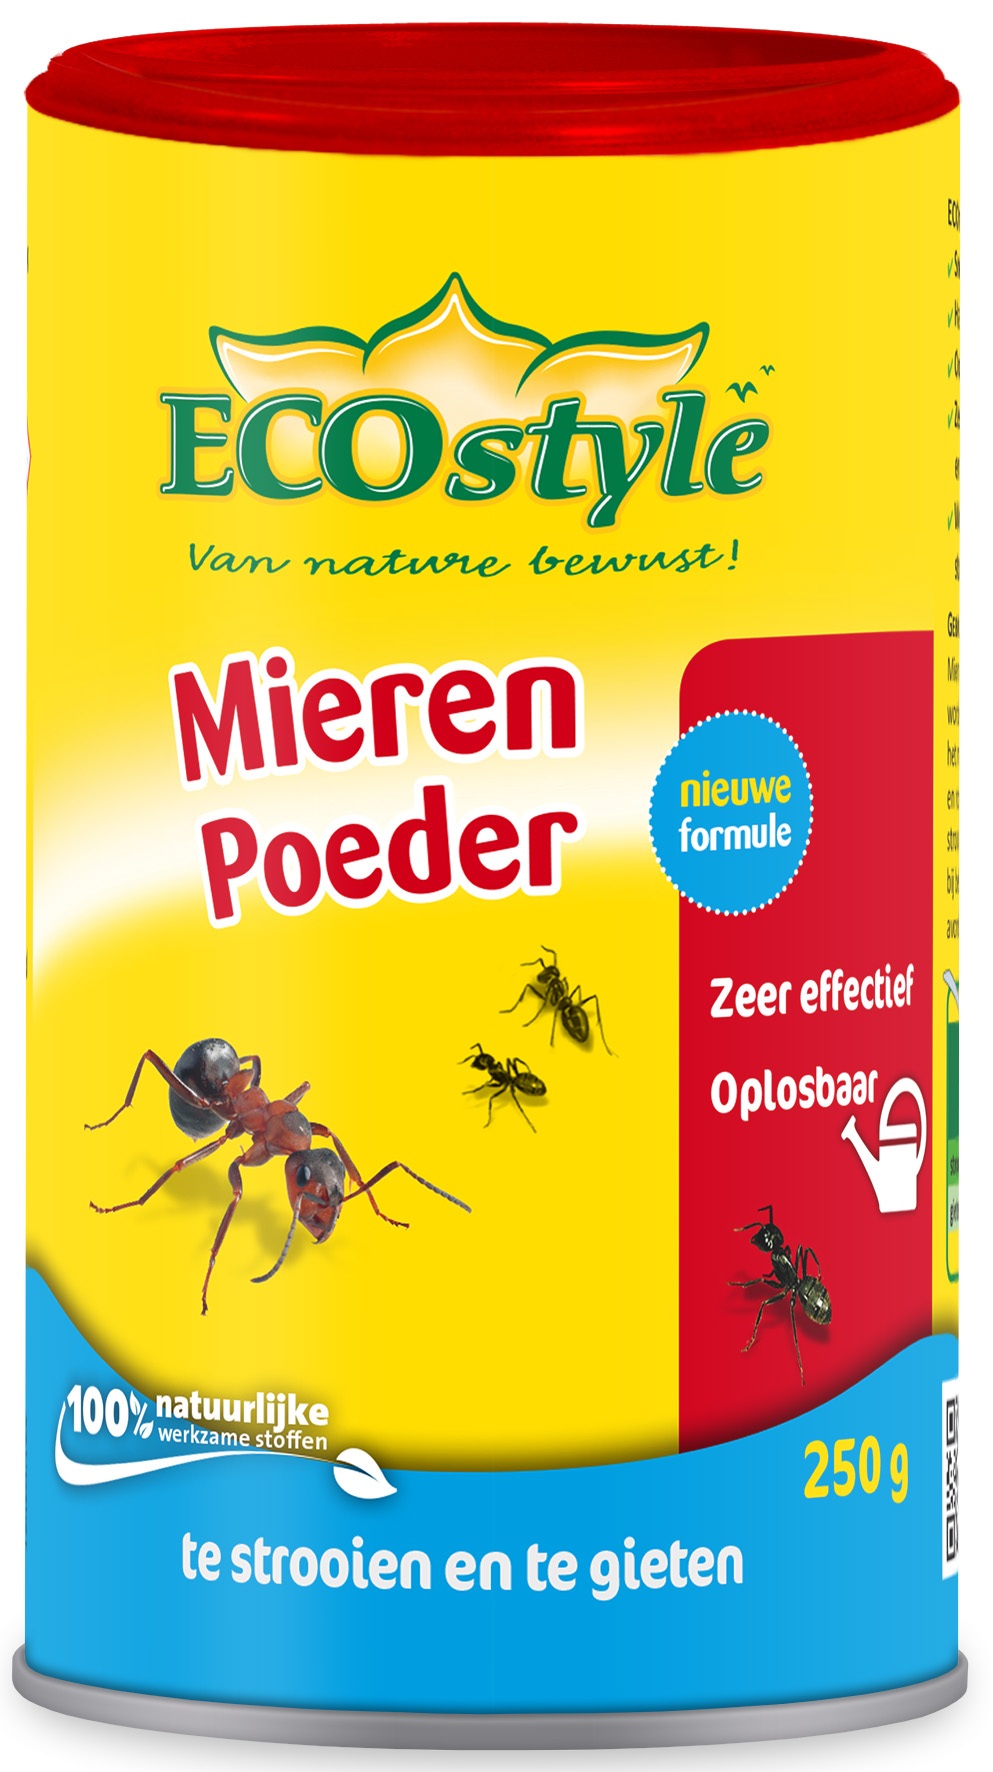 Afbeelding Ecostyle - Mierenpoeder door Haxo.nl